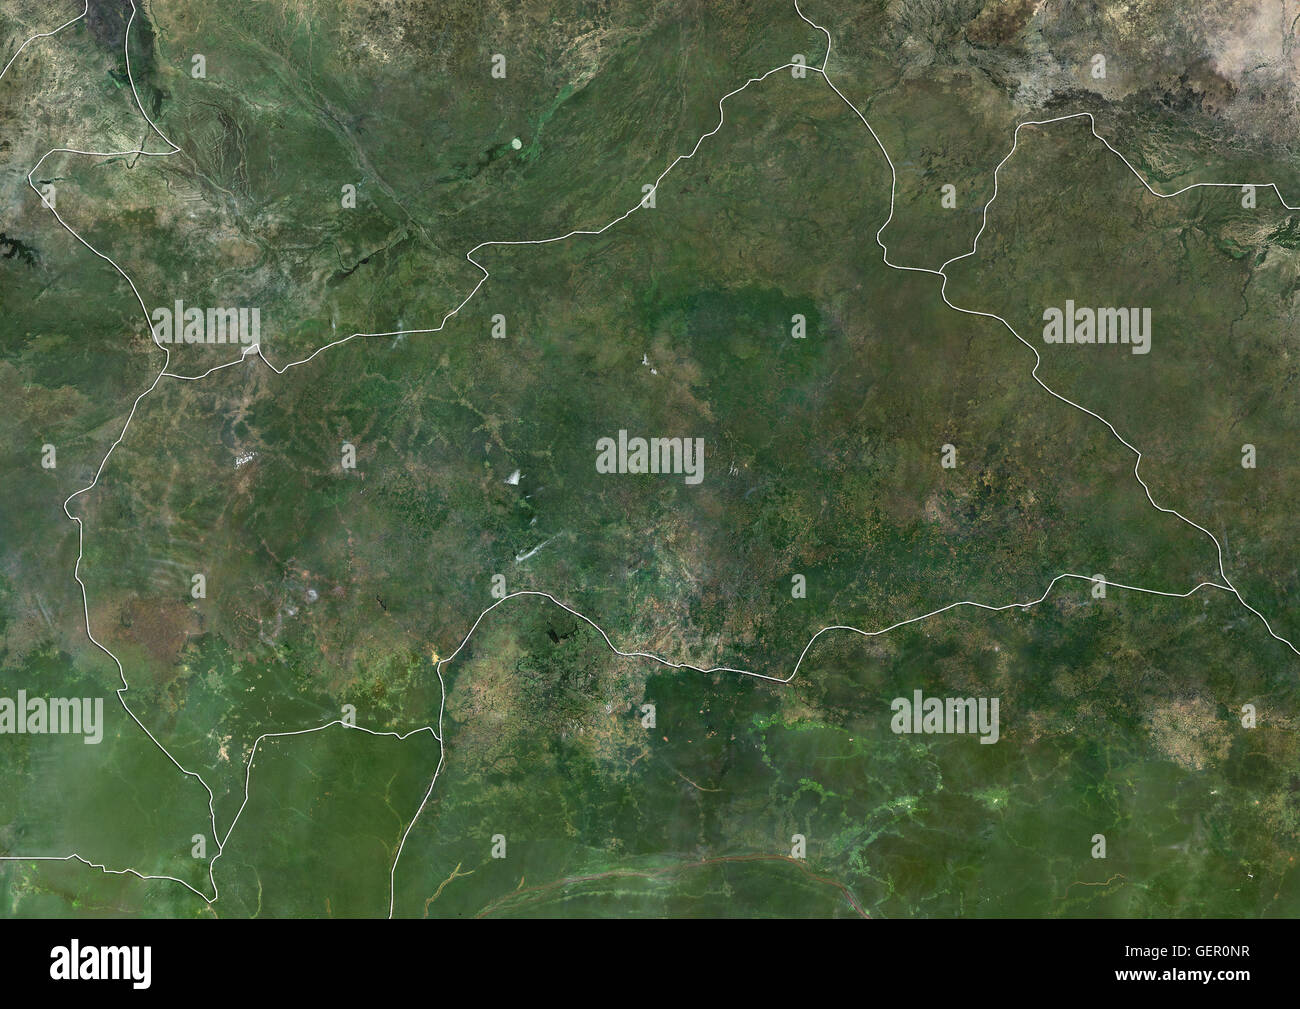 Satellitenansicht der Zentralafrikanischen Republik (mit Ländergrenzen). Dieses Bild wurde aus Daten von Landsat-Satelliten erworben erstellt. Stockfoto